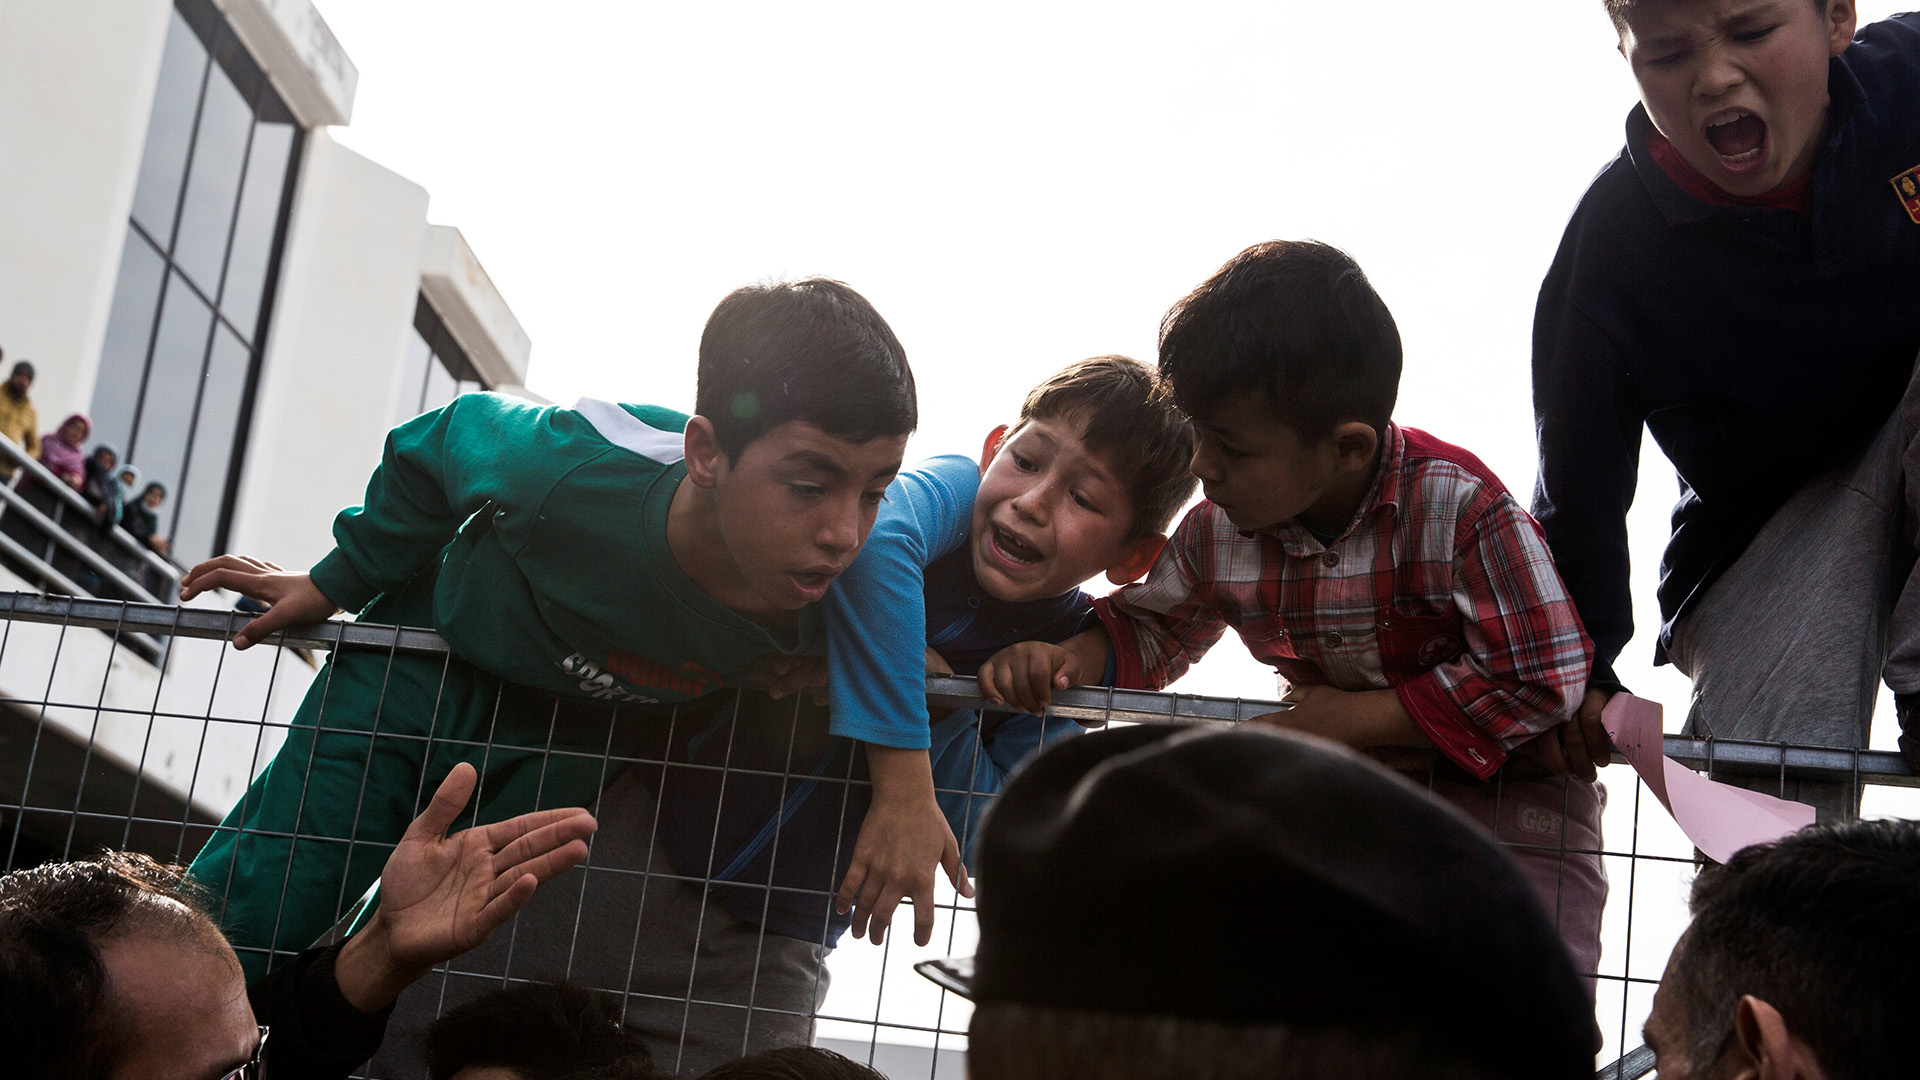 El trato que da Europa a los niños refugiados “incrementa el riesgo de radicalización”